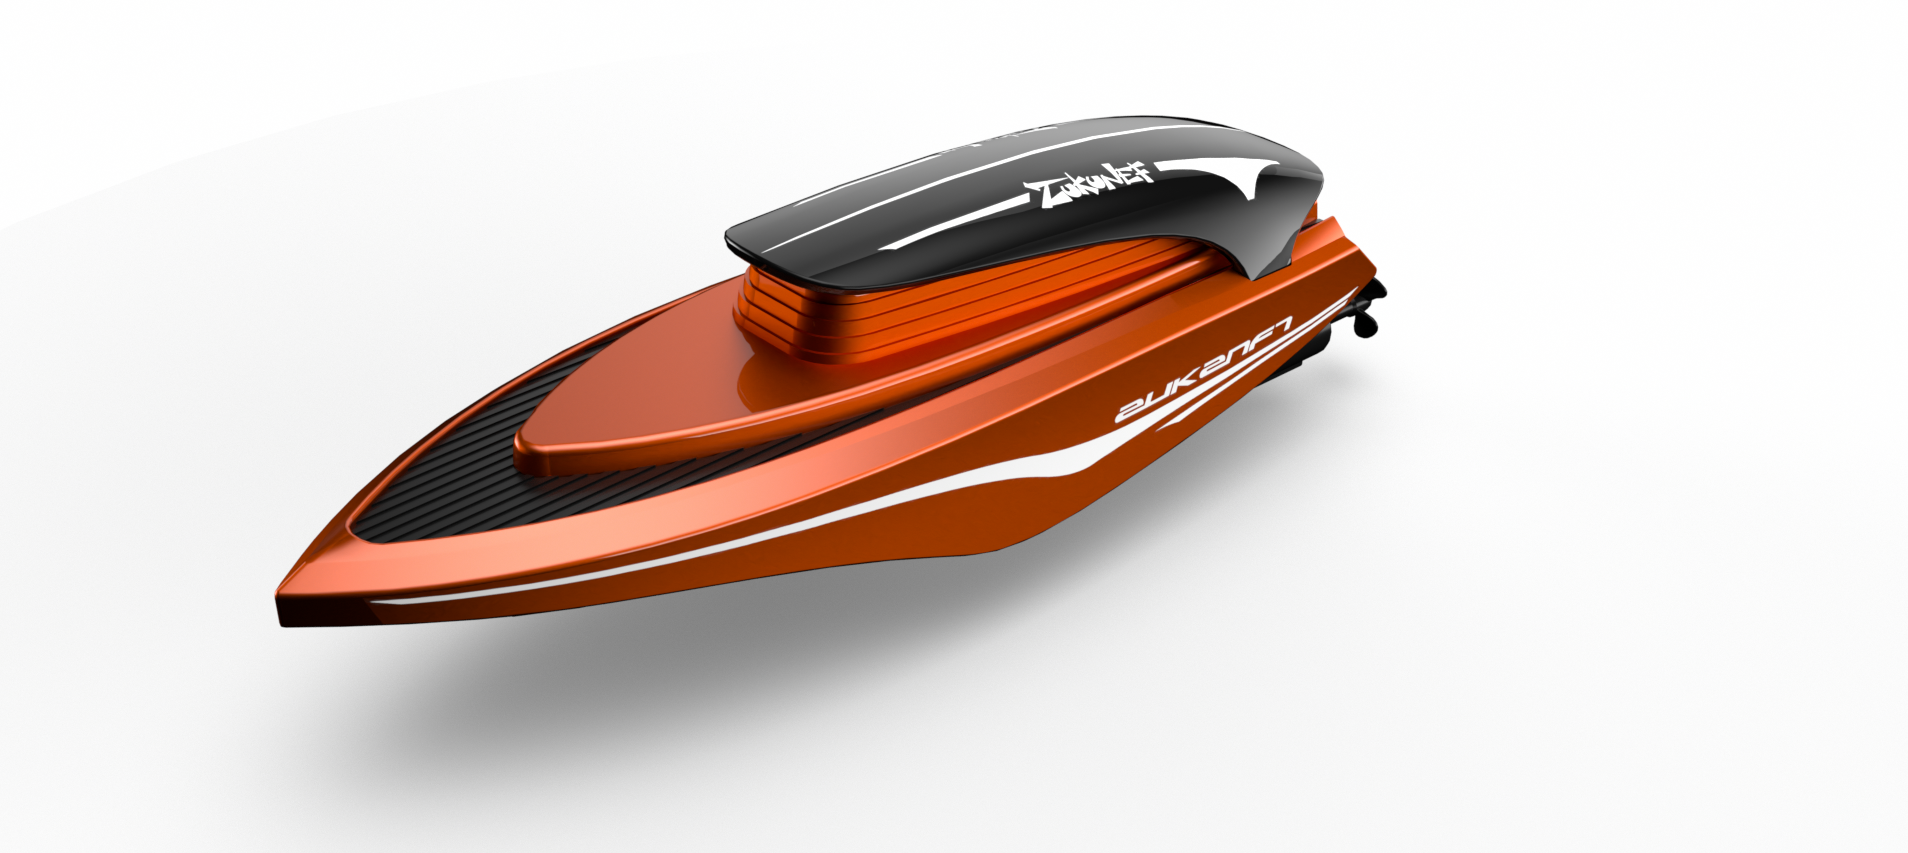 【杭州智信】2.4G电动遥控 迷你 高速快艇舰船模型竞技比赛器材